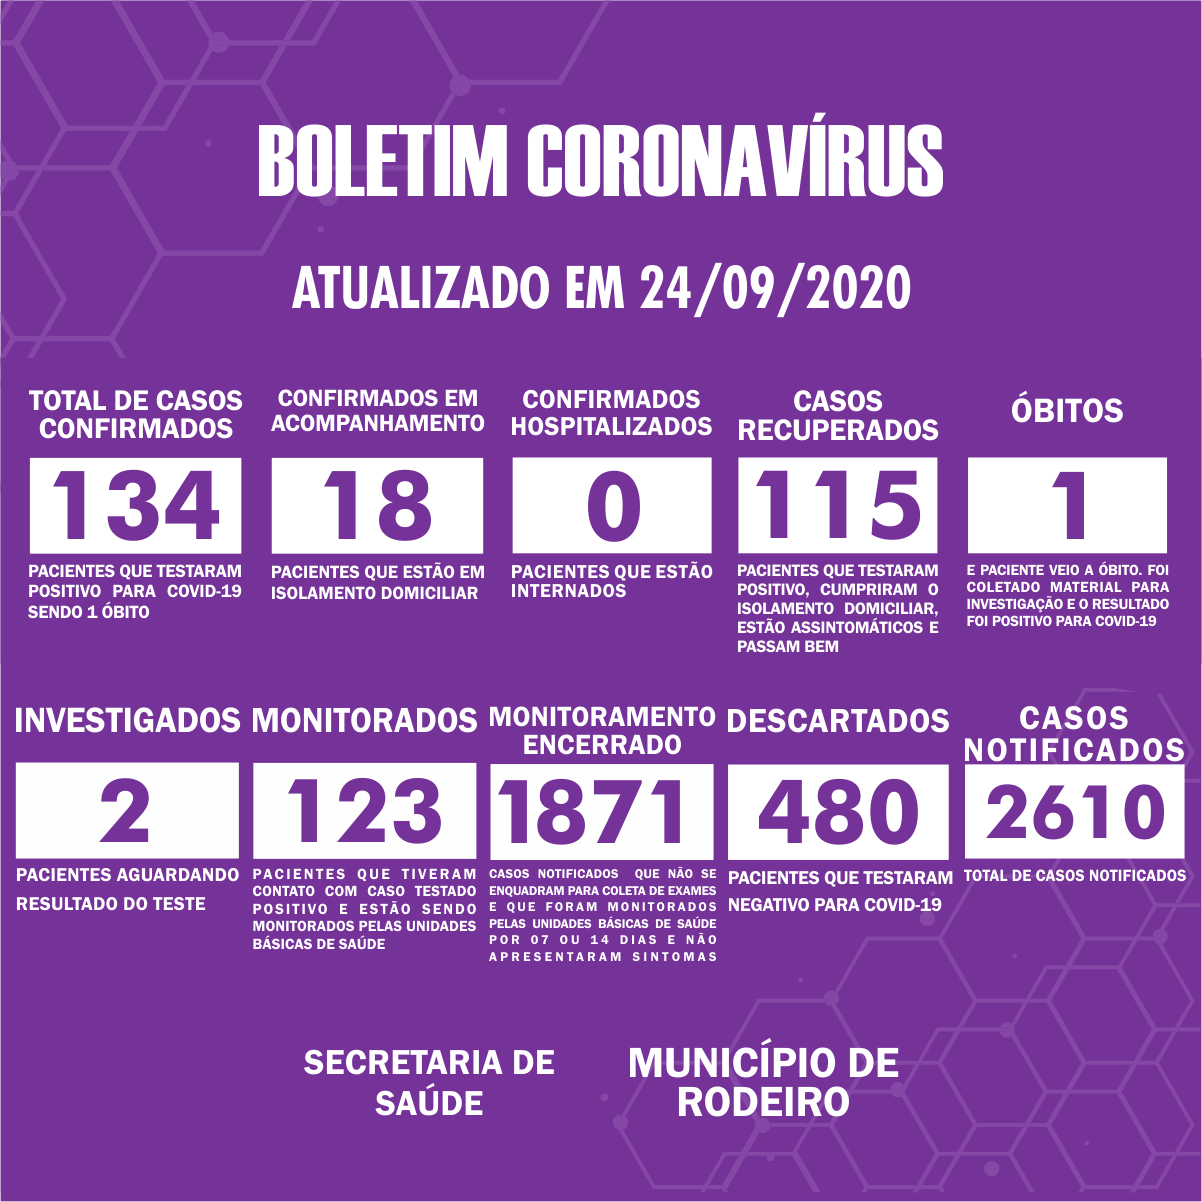 Boletim Epidemiológico do Município de Rodeiro sobre coronavírus, atualizado em 24/09/2020